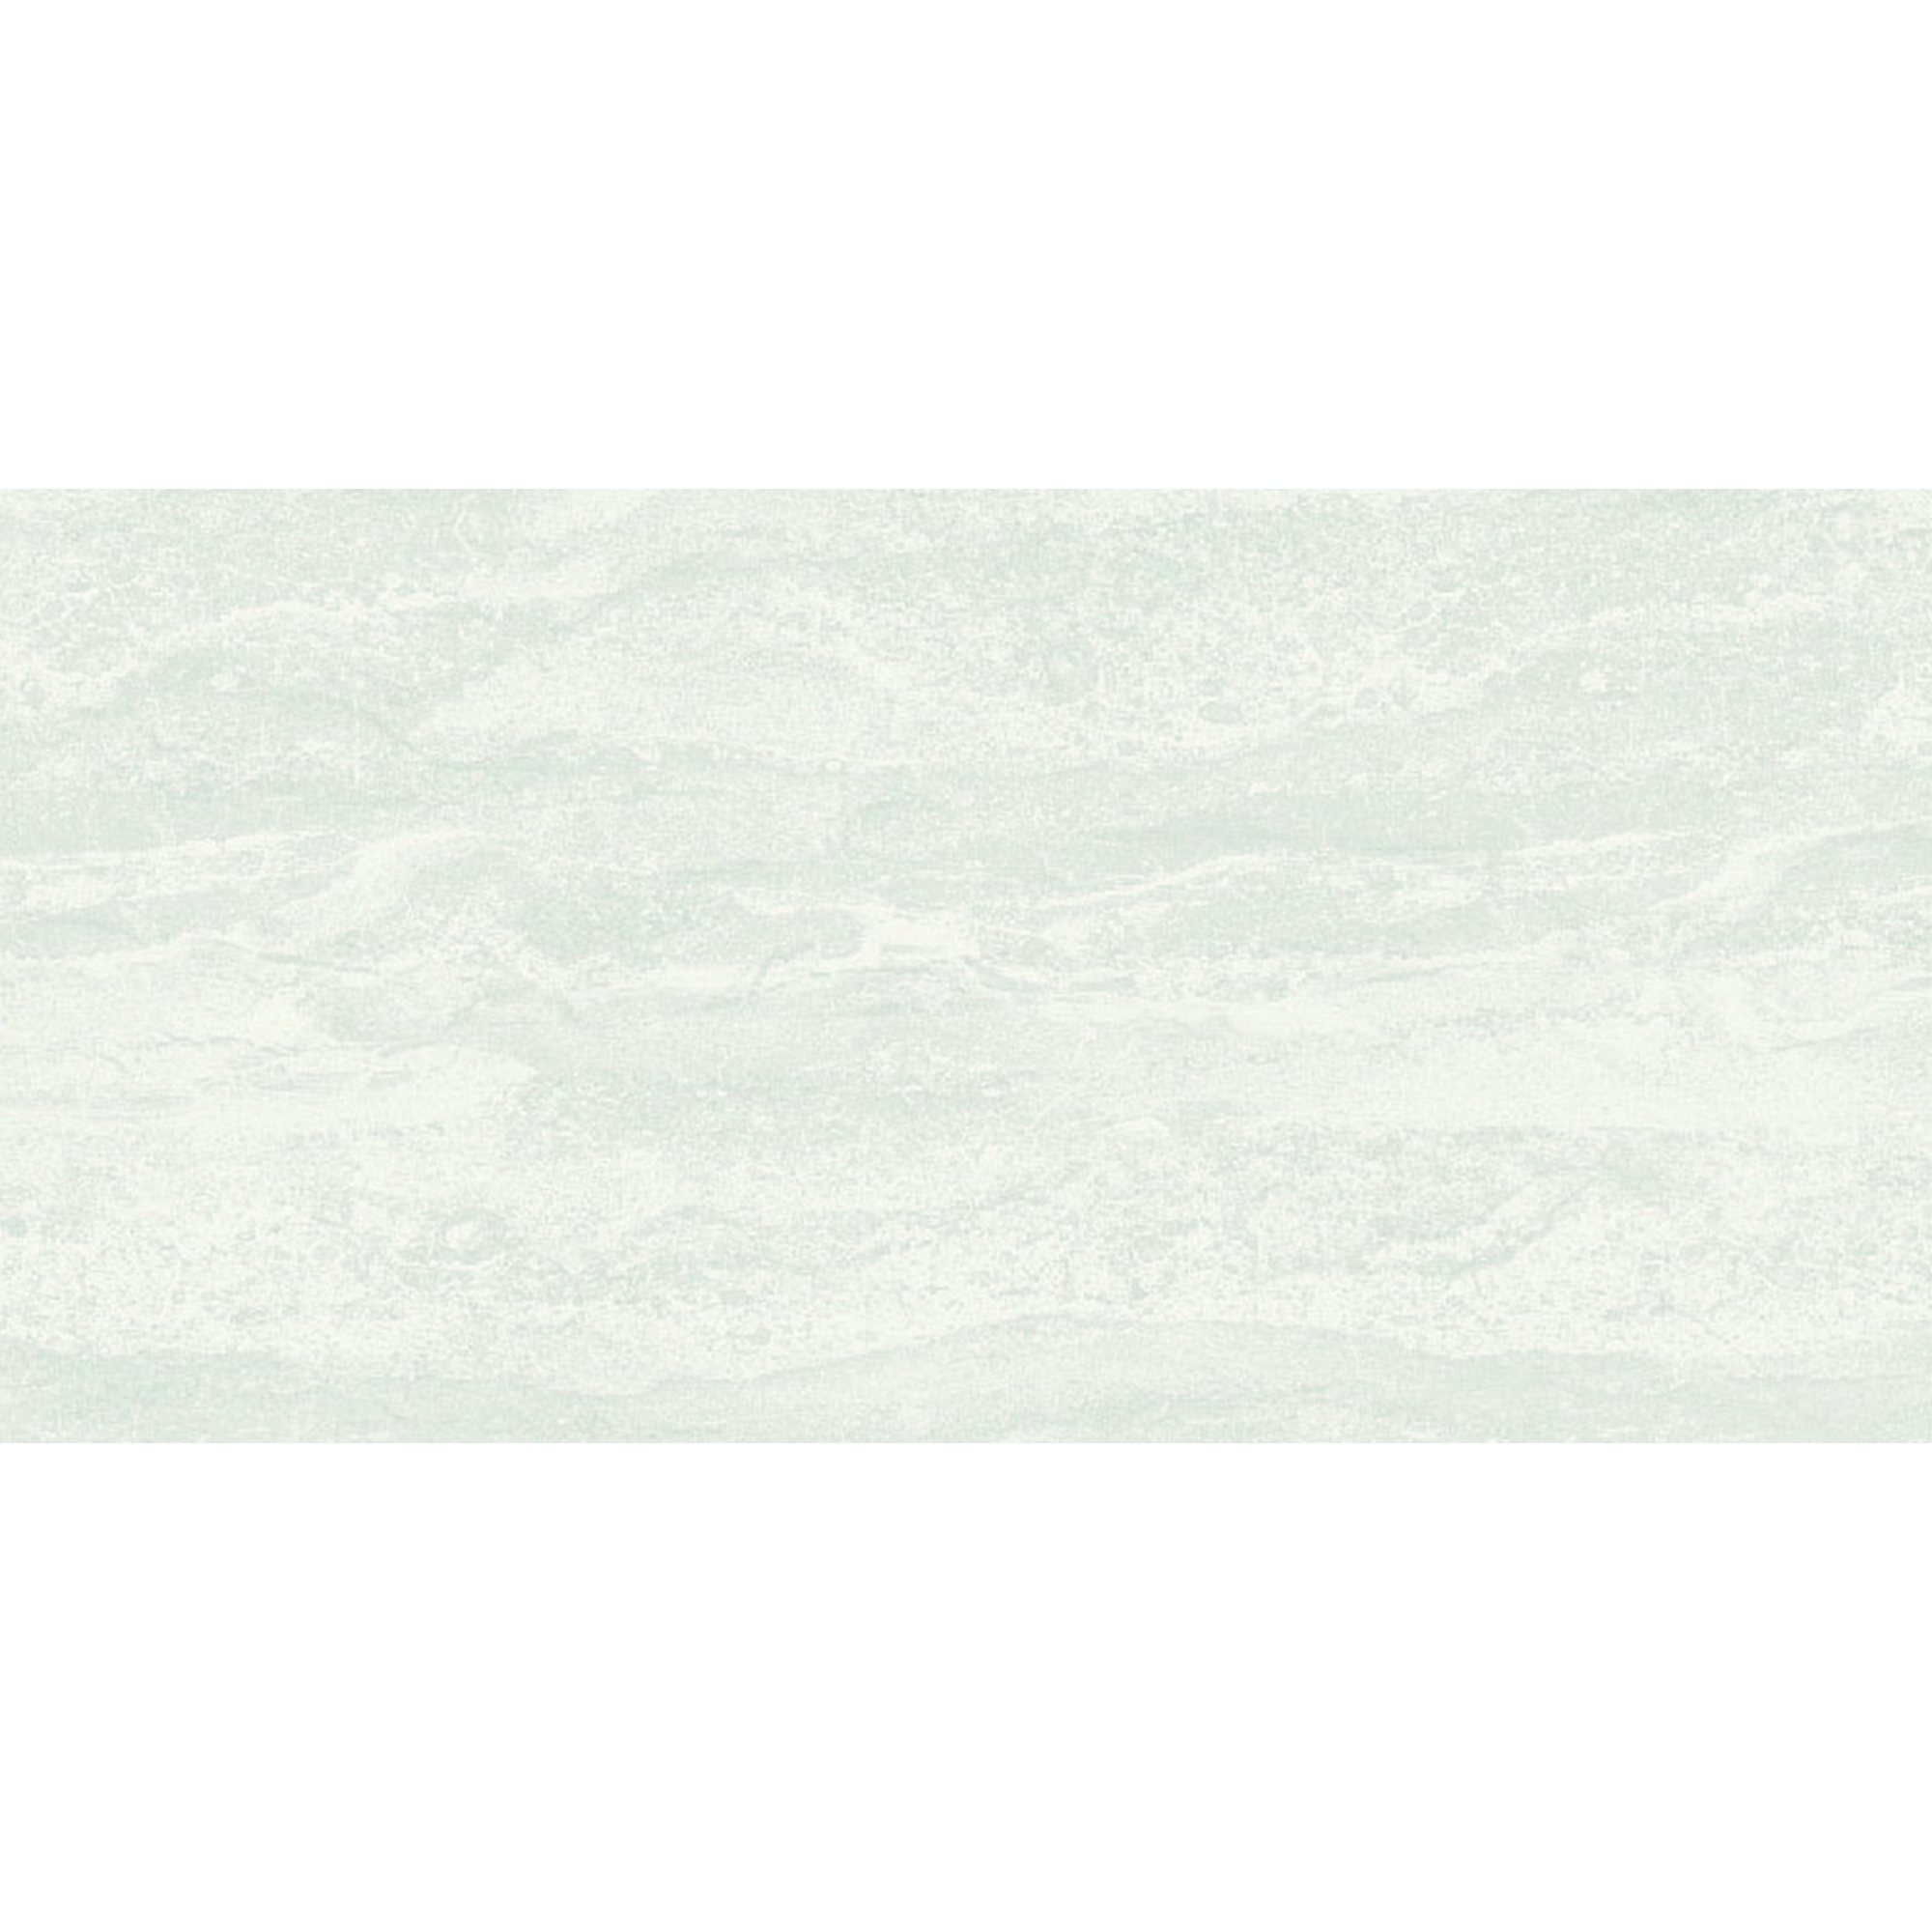 Wandfliese 'Genf' Steingut cremefarben matt, strukturiert 30 x 60 cm + product picture